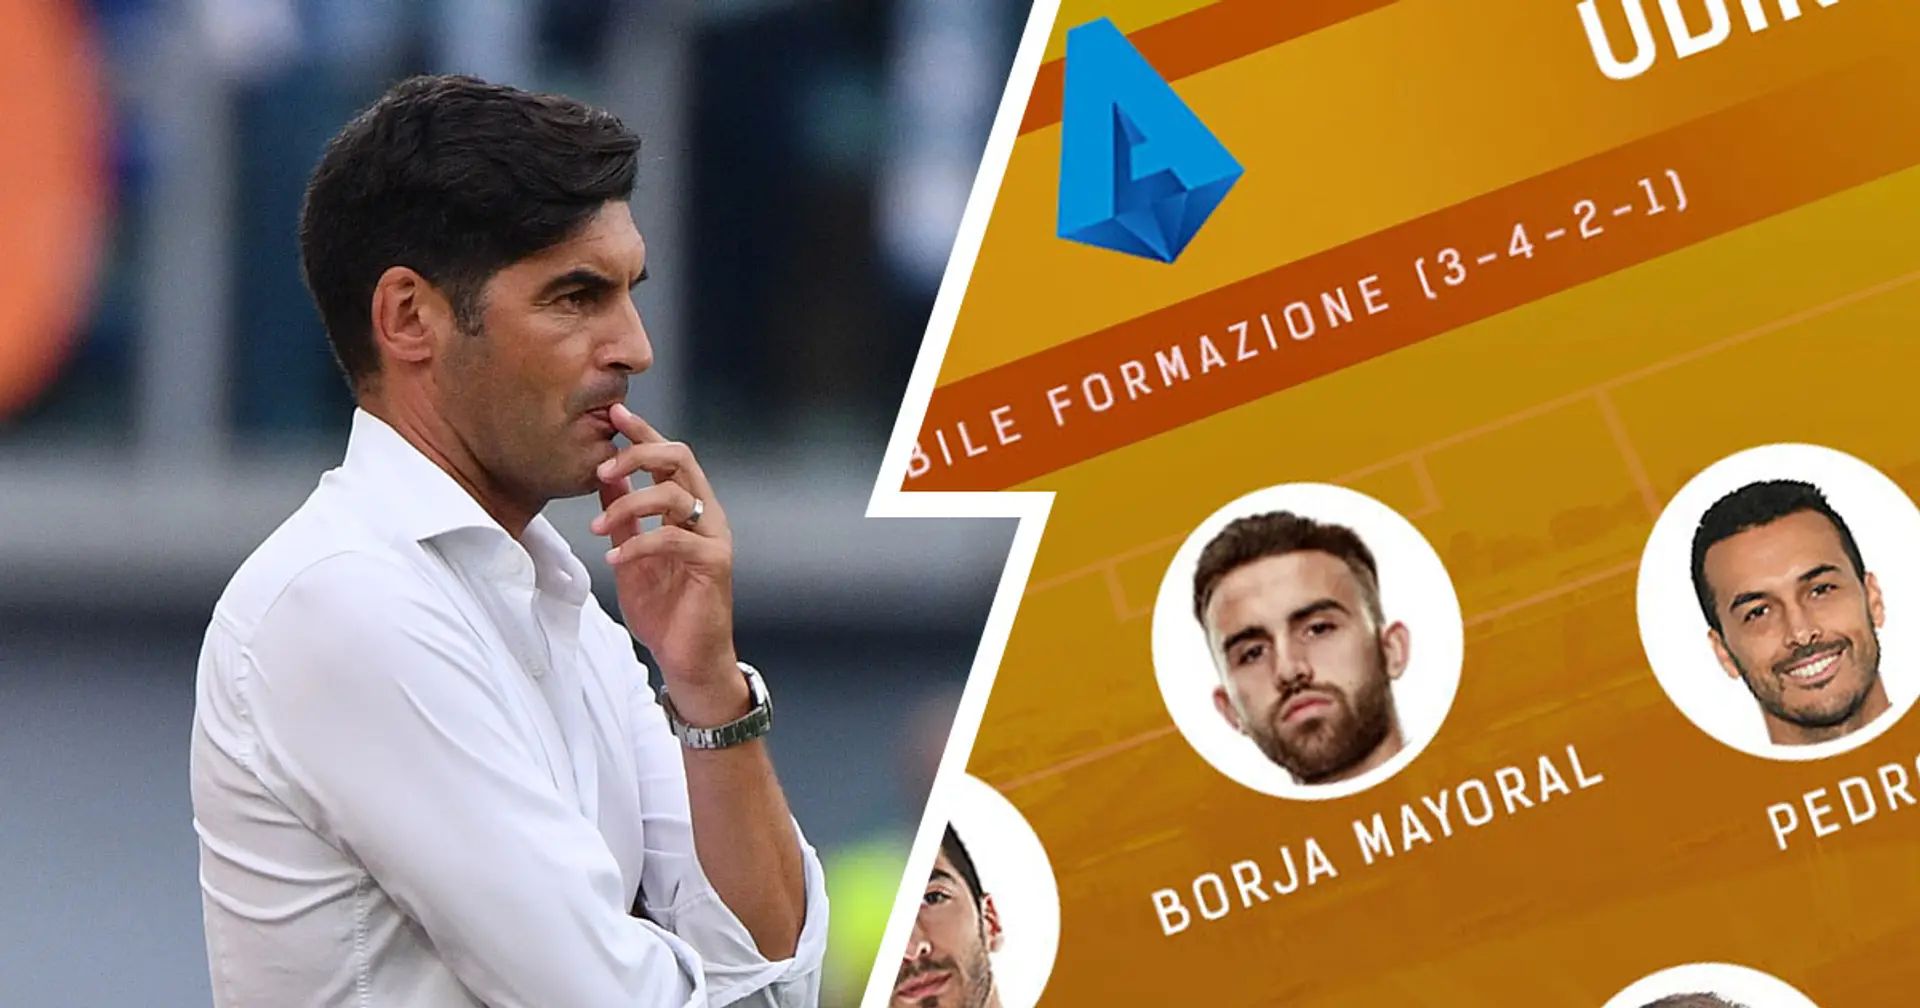 Le probabili formazioni di Roma-Udinese: Pau Lopez in porta, Pedro torna titolare